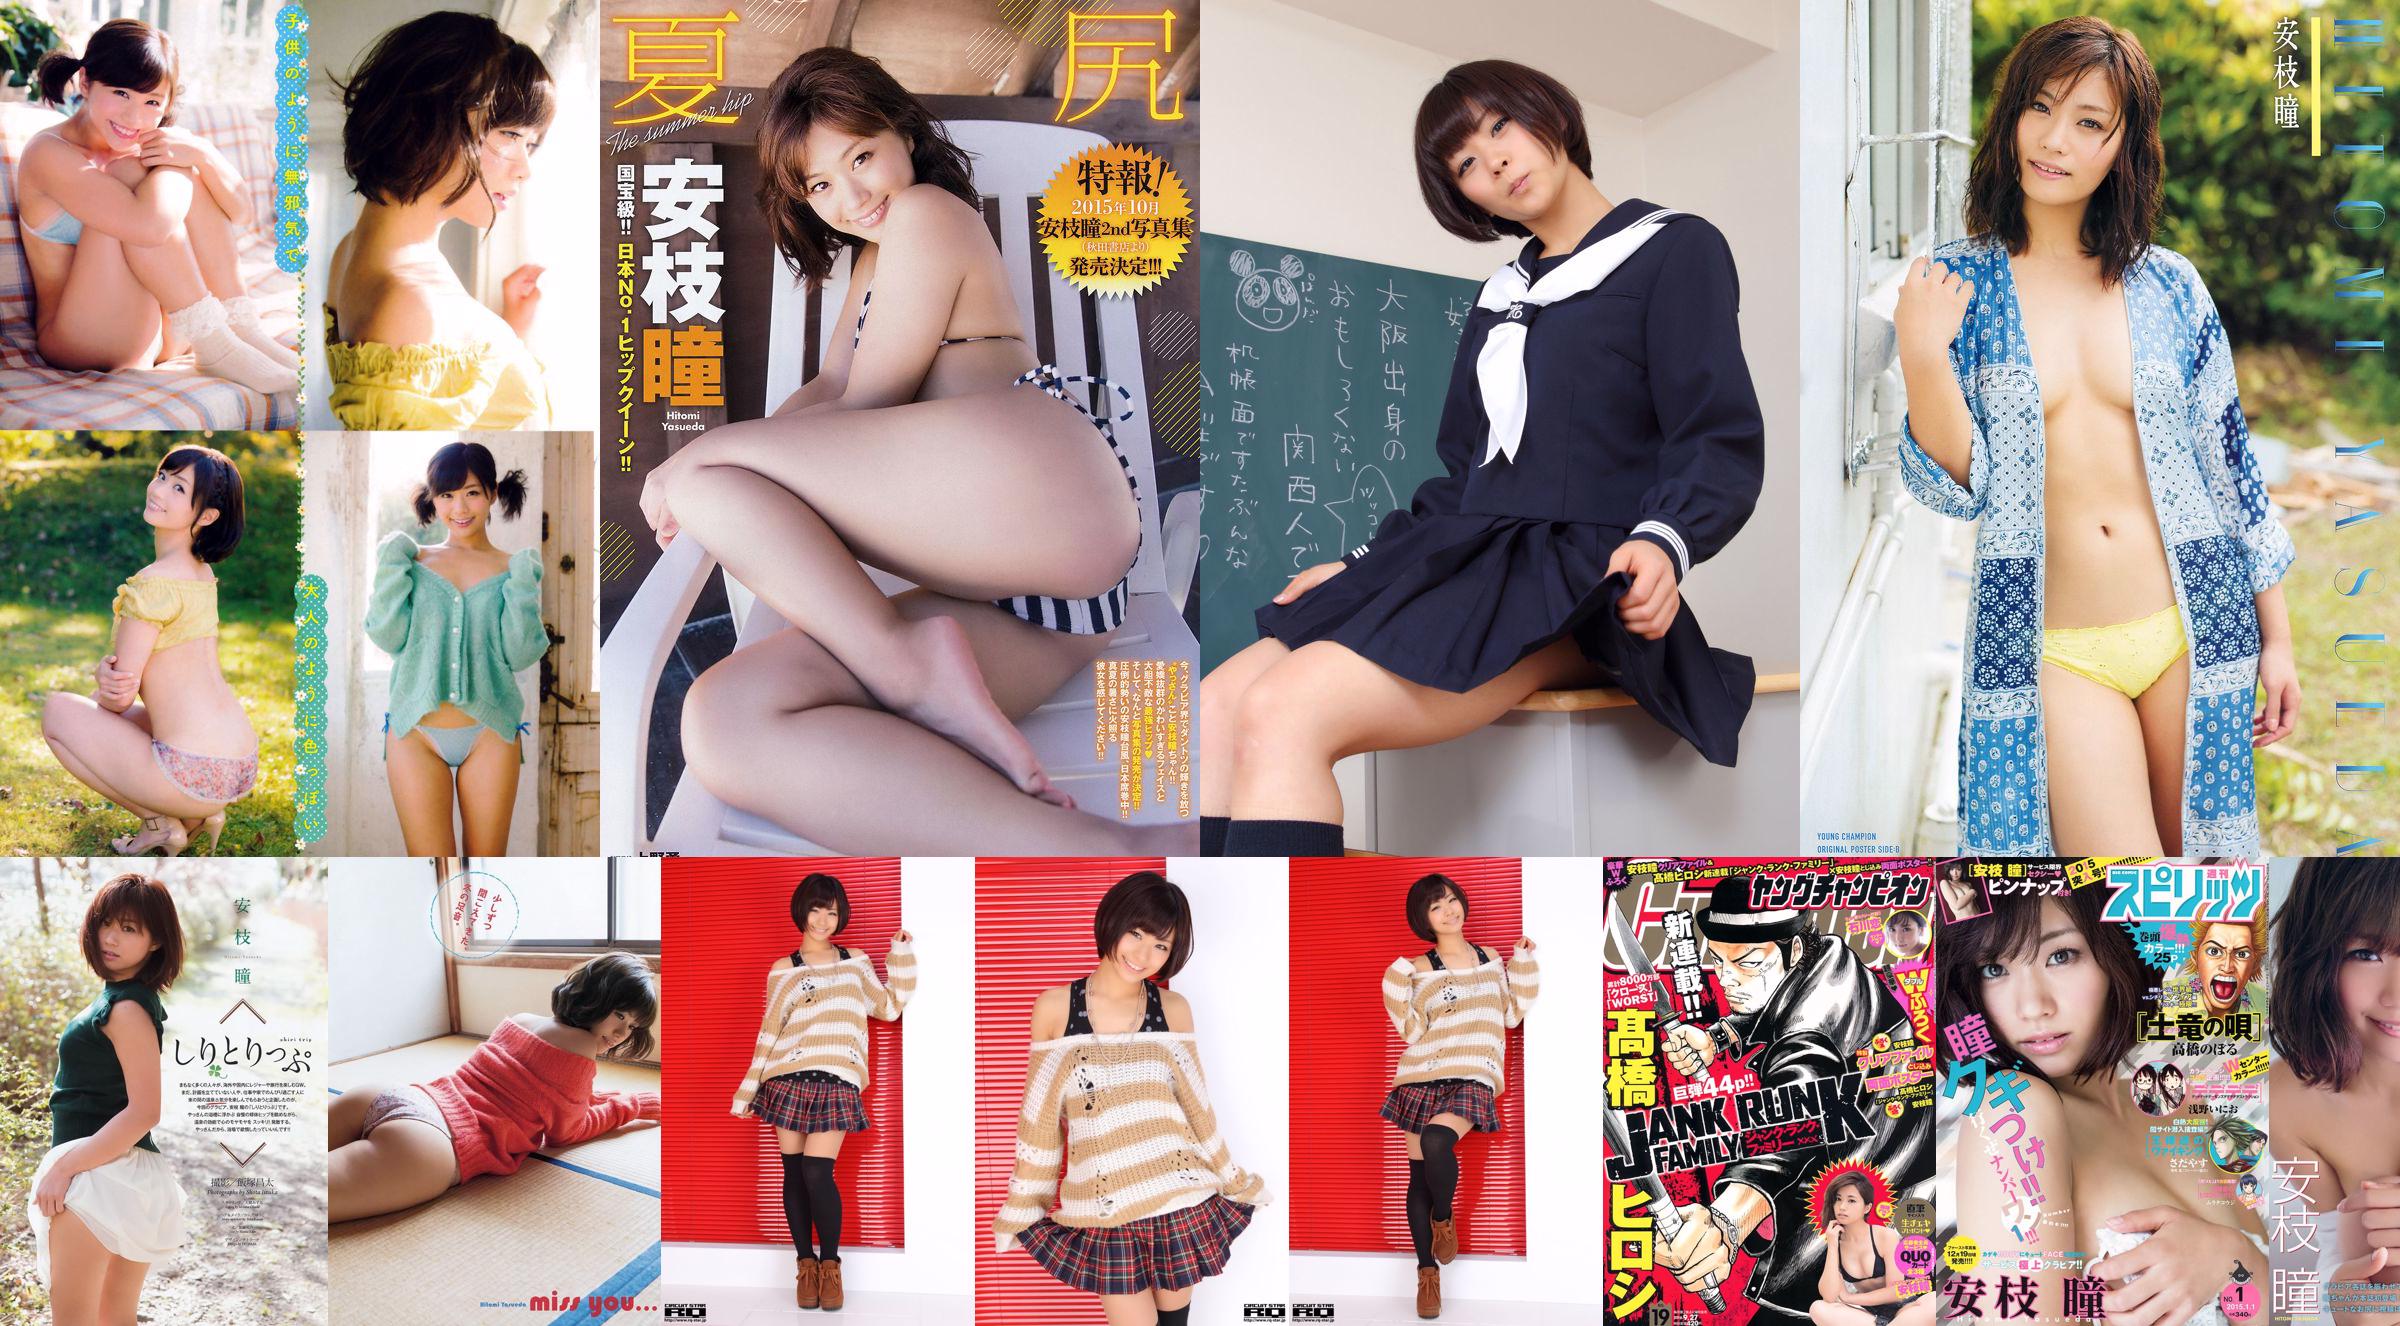 [Weekly Big Comic Spirits] Hitomi Yasae 2014 No.08 Photo Magazine No.3dad6d Trang 1